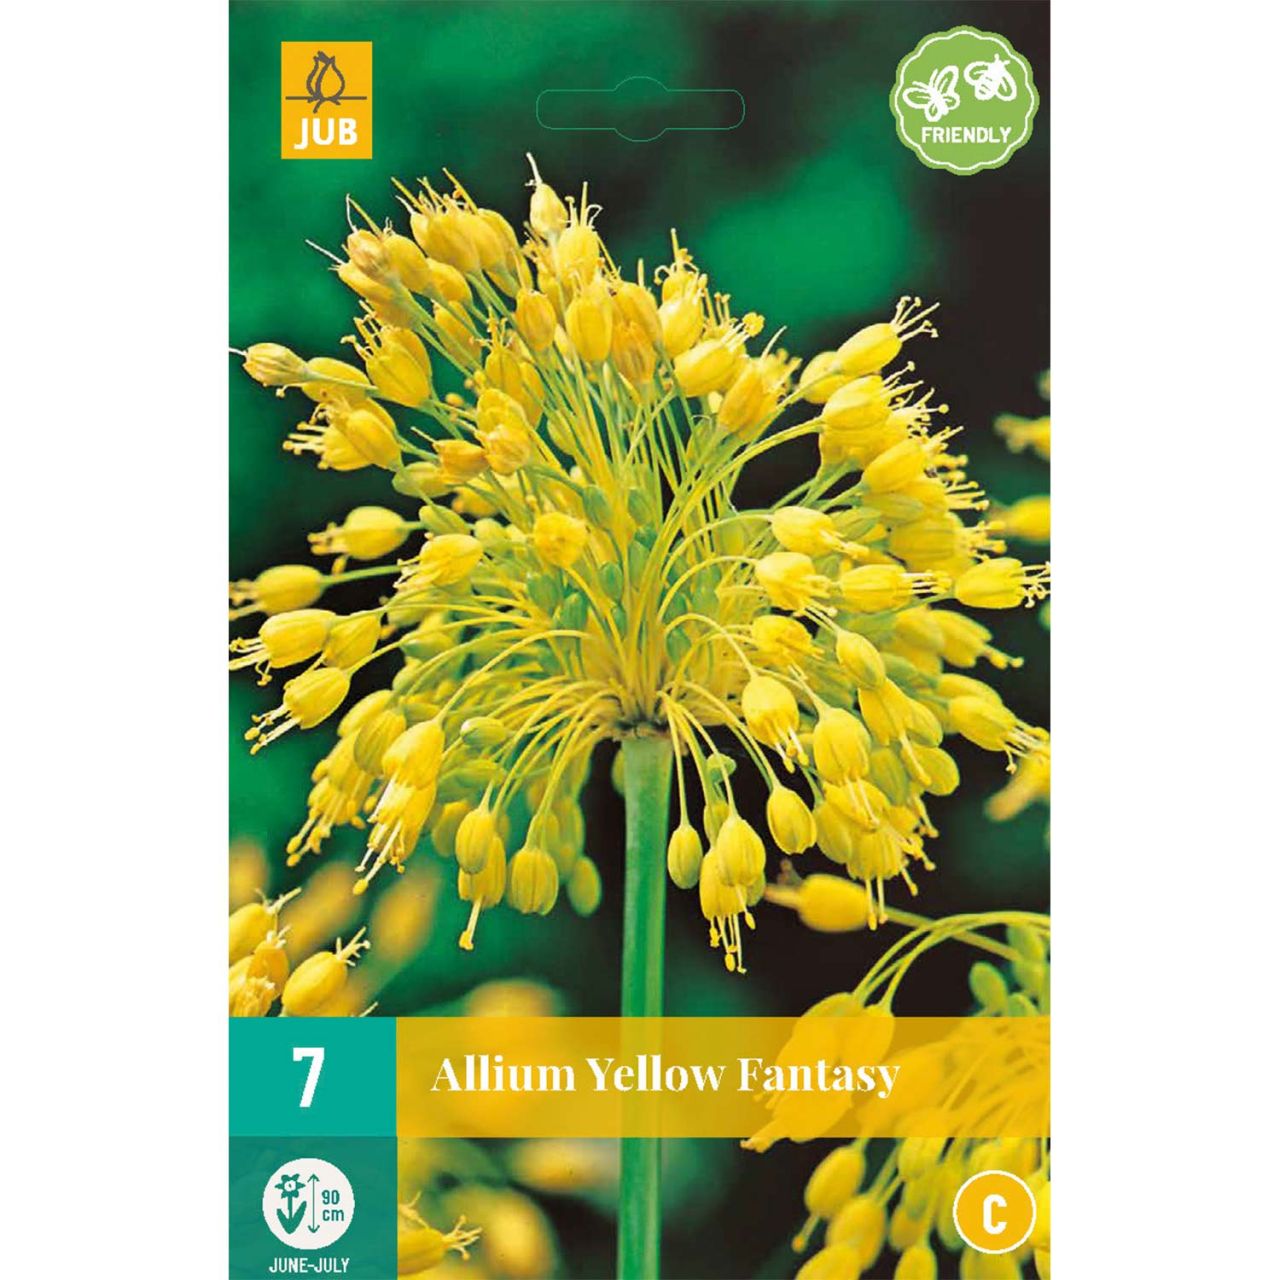 Kategorie <b>Herbst-Blumenzwiebeln </b> - Allium 'Yellow Fantasy®'- 7 Stück - Allium chloranthum